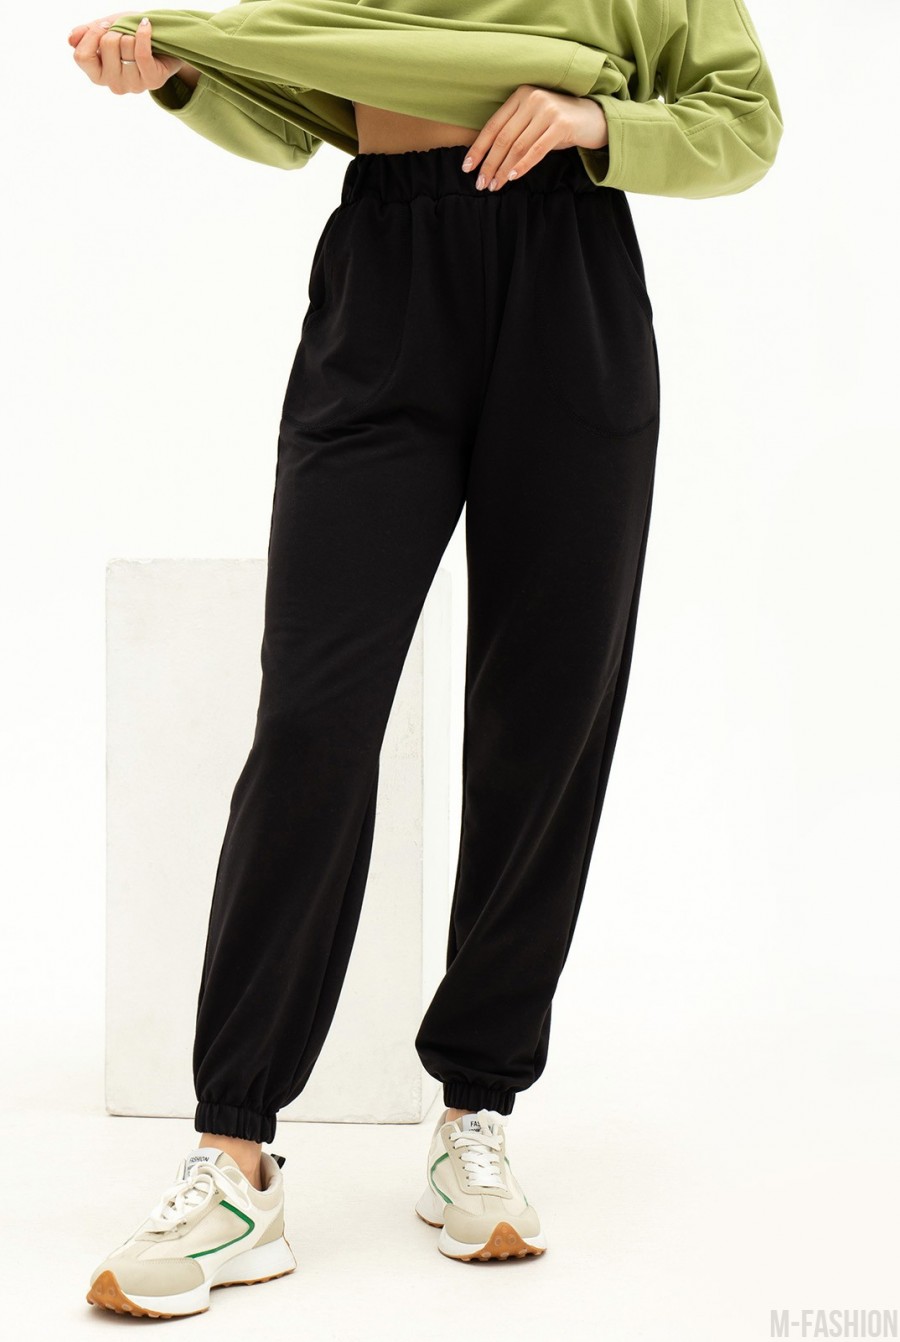 Черные трикотажные спортивные штаны модели джоггер  - Фото 1